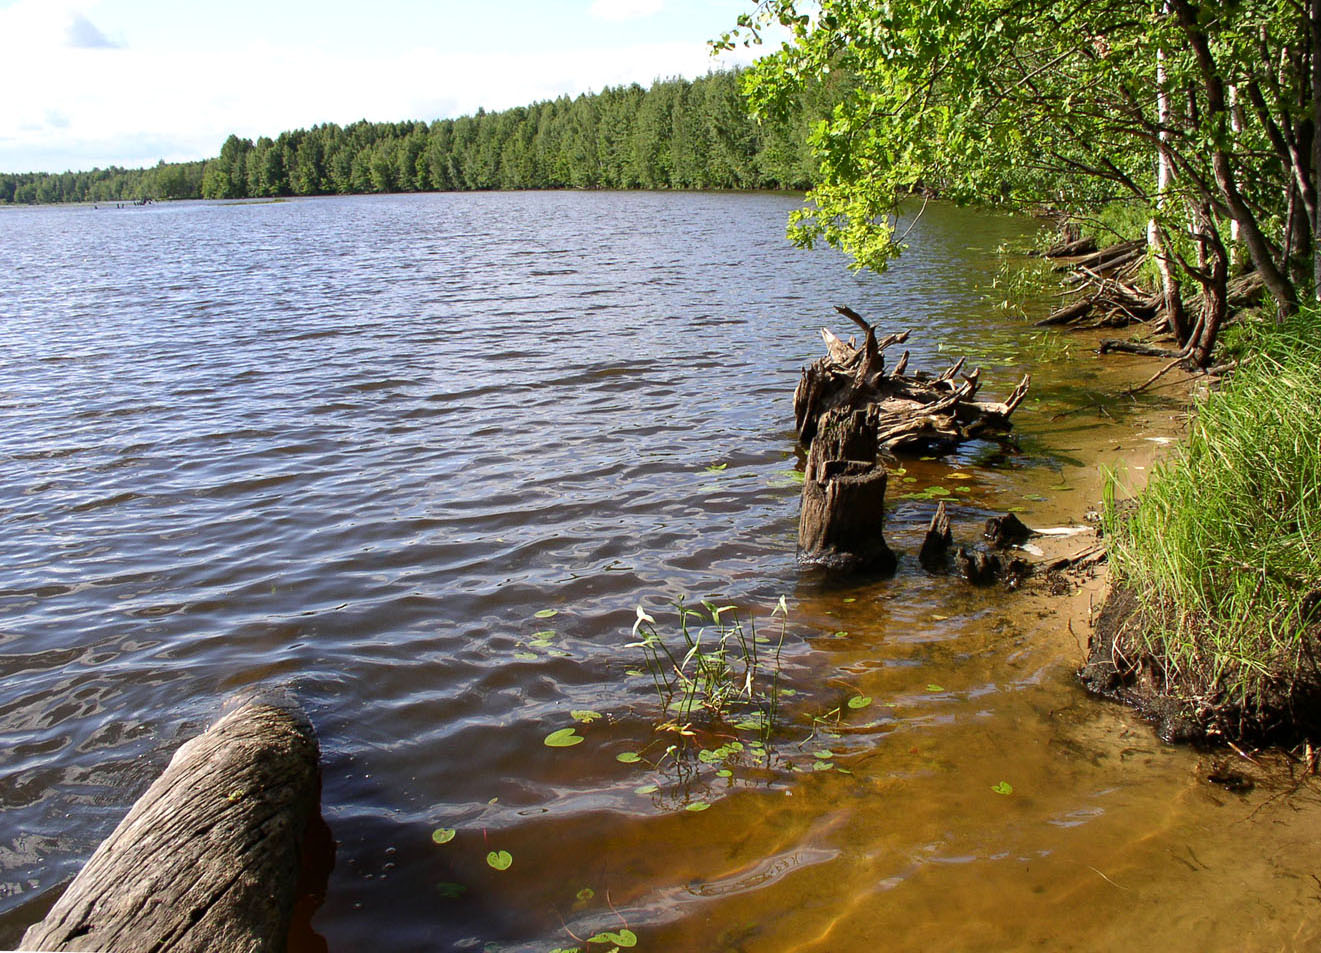 Чебоксарское водохранилище, image of landscape/habitat.